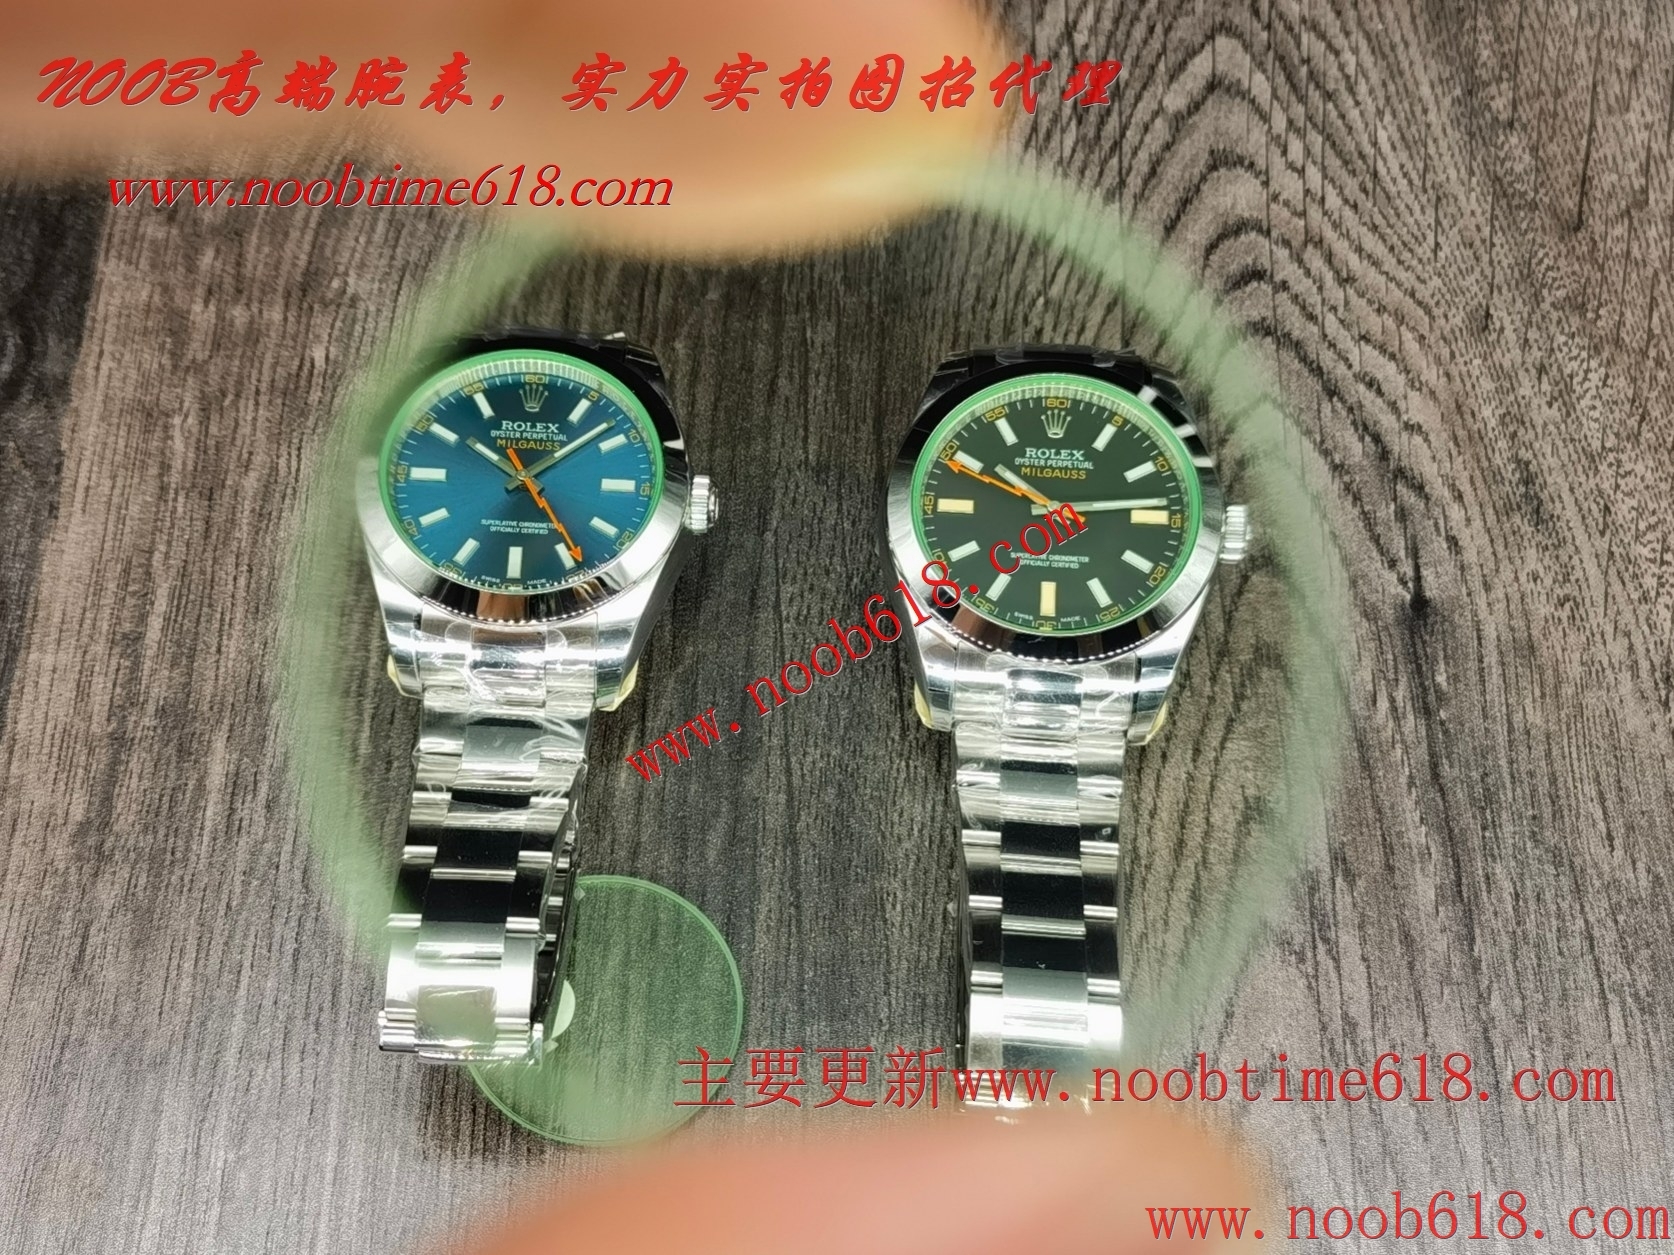 臺灣手錶代理,香港手錶代理,GS 閃電綠玻璃同步綠色材料玻璃定制3131一體機芯仿錶